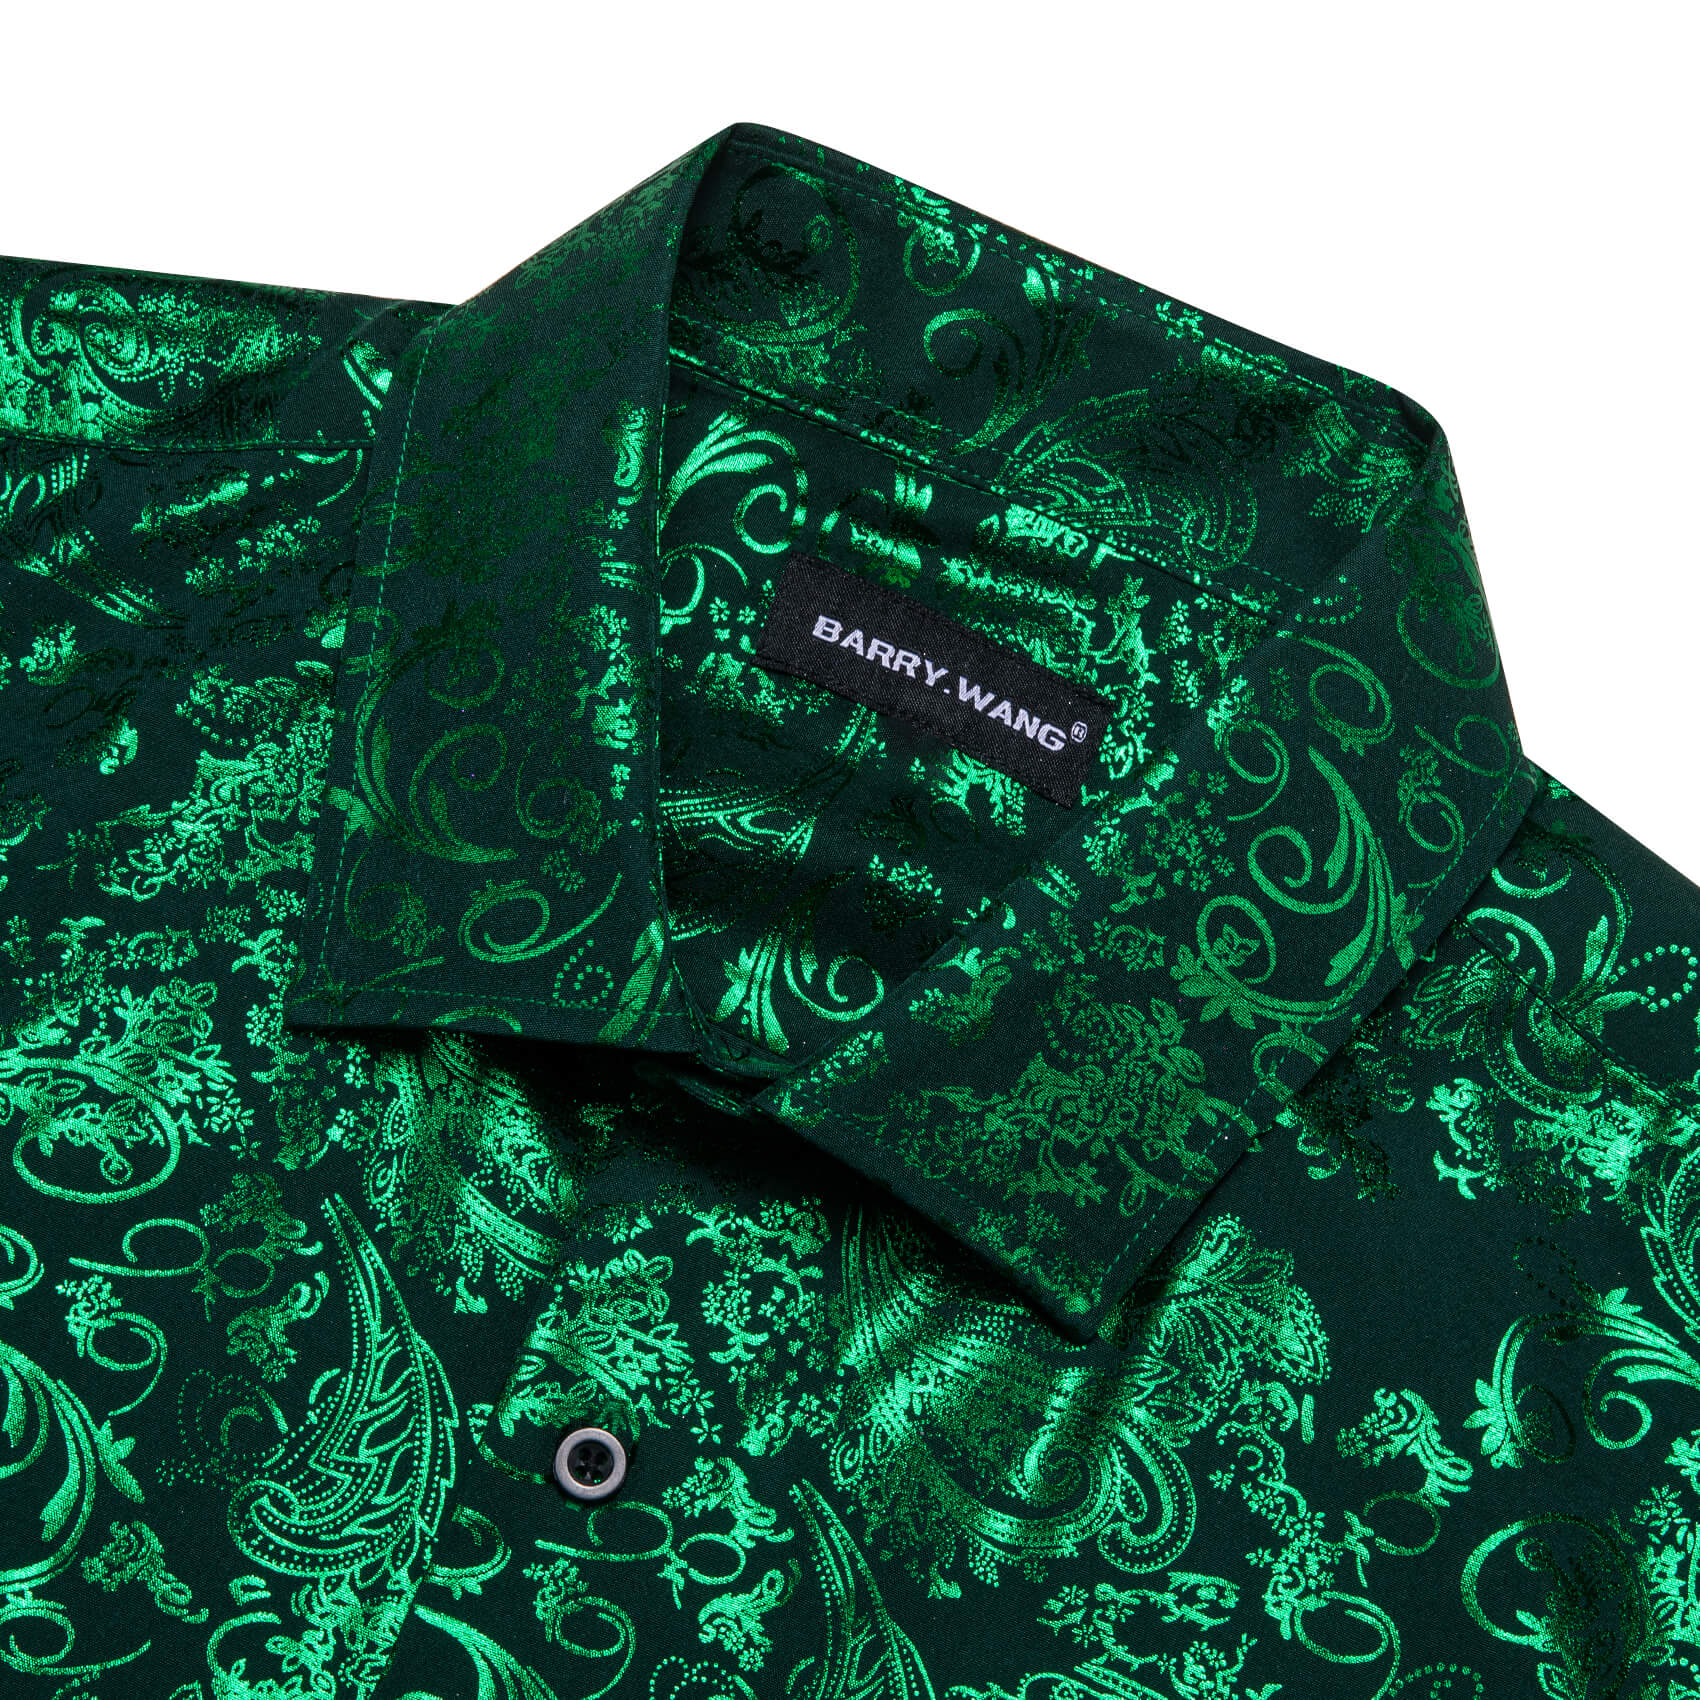 Barry.wang Men's Shirt Silk Emerald Green Bronzing Floral Jacquard Shirt